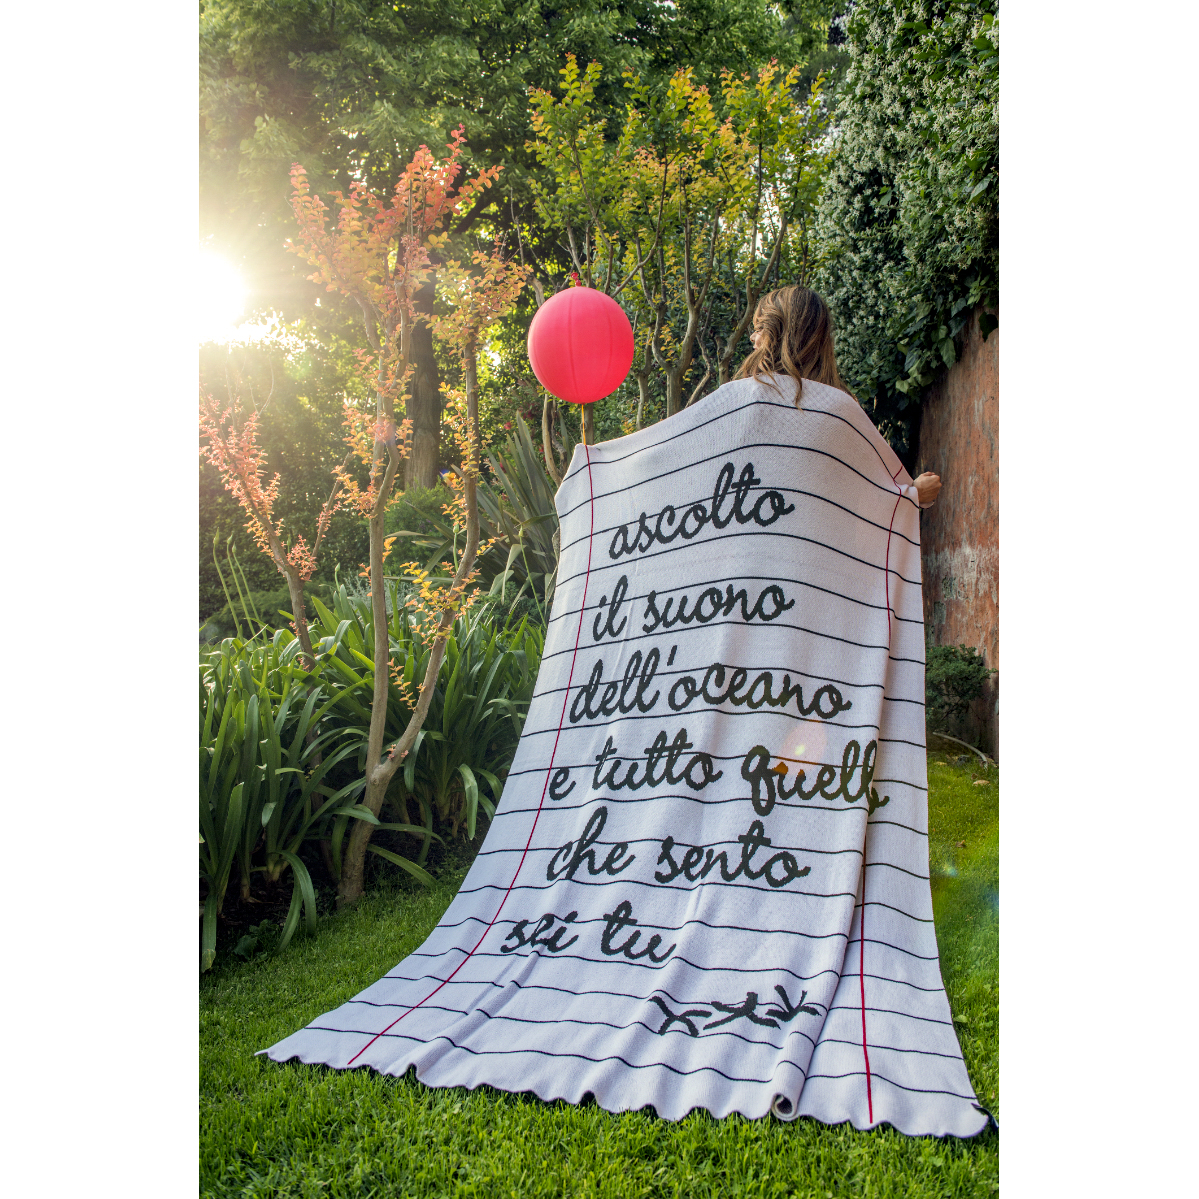 coperta in cotone con scritte usata come mantello da una ragazza in un giardino